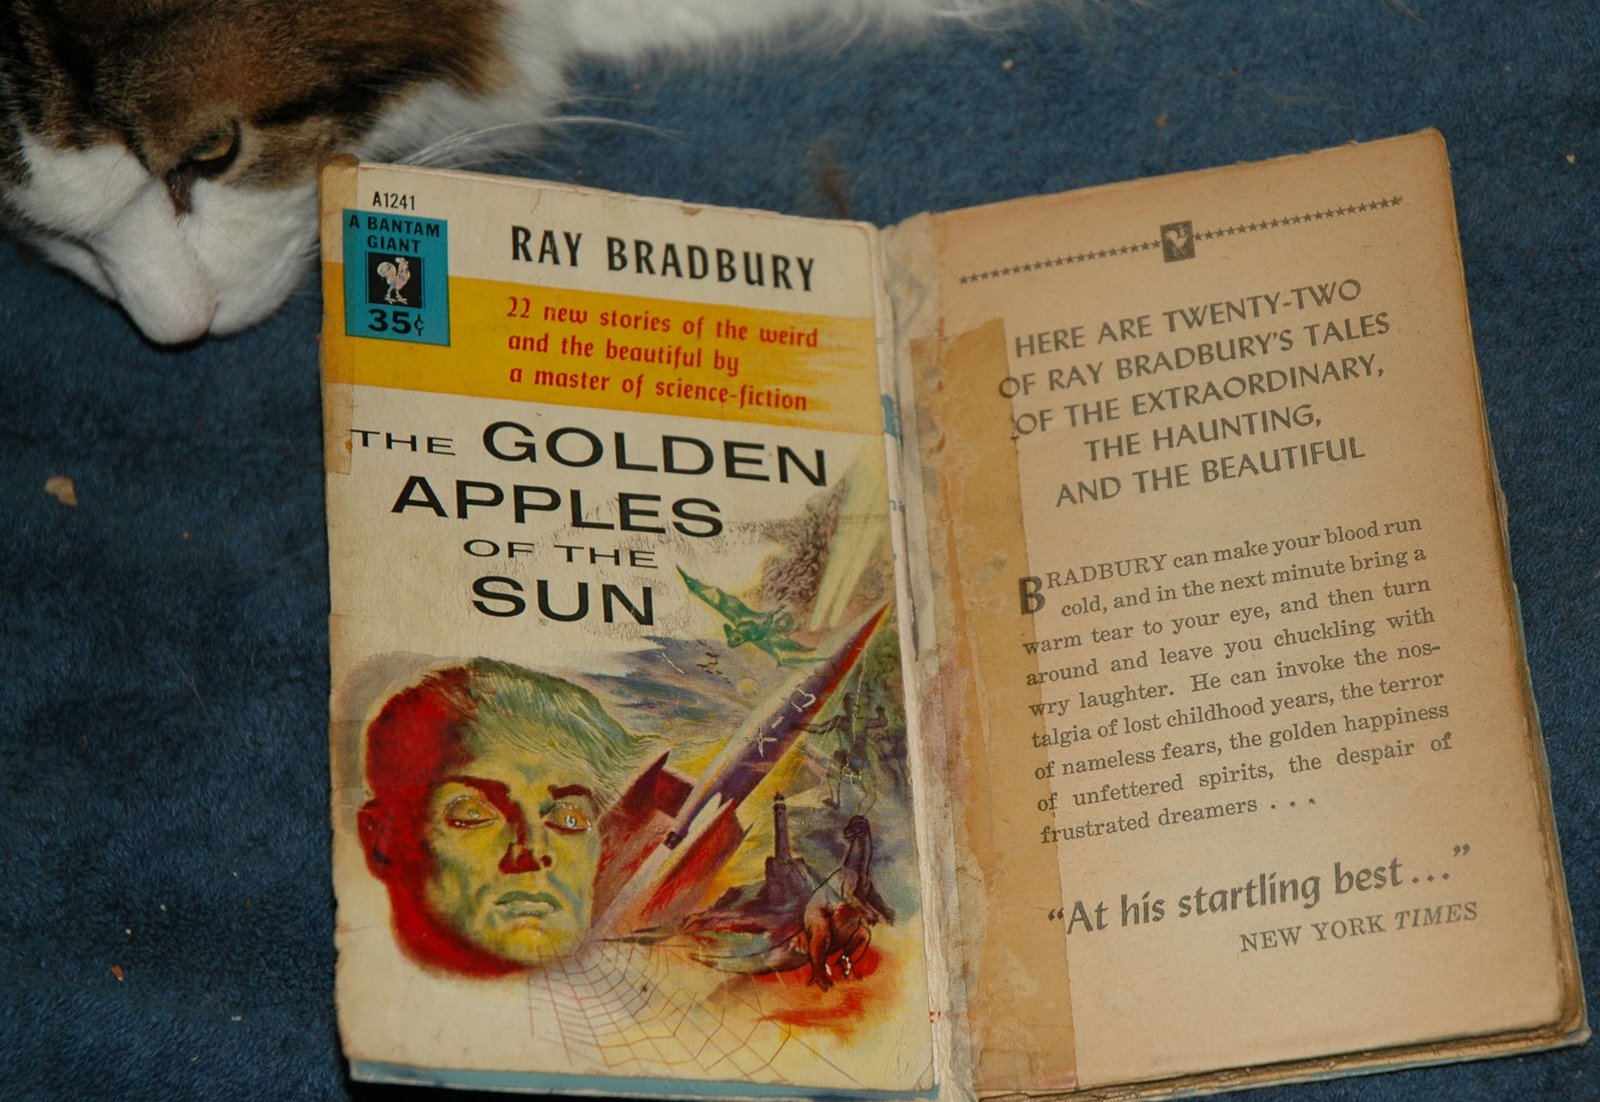 Ray Bradbury   :  August 22, 1920 – June 5, 2012